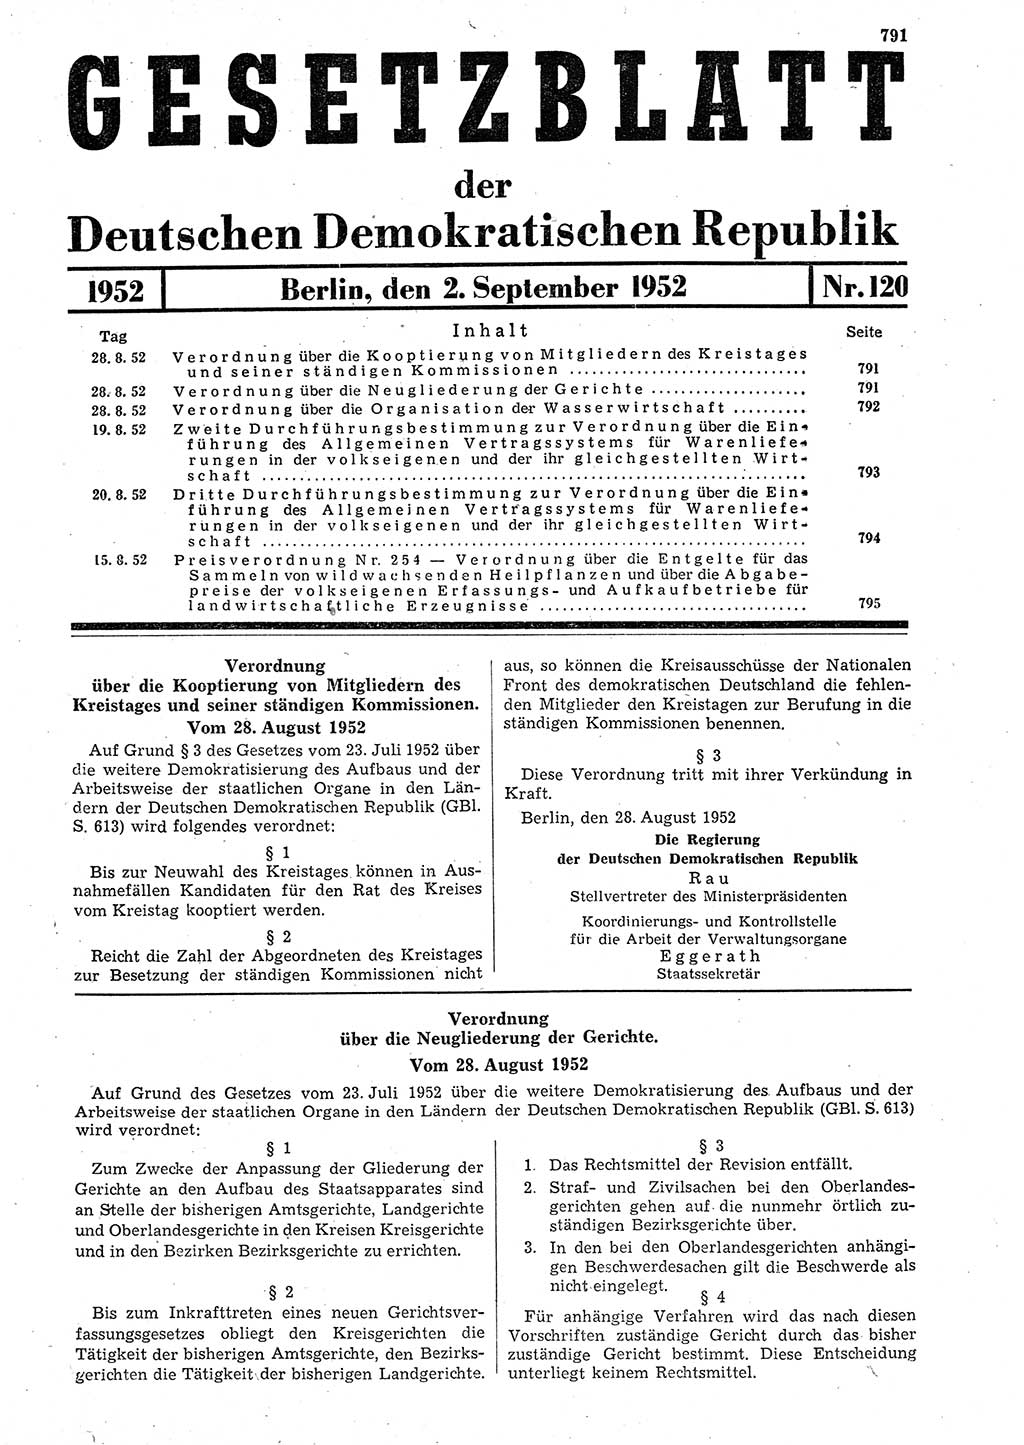 Gesetzblatt (GBl.) der Deutschen Demokratischen Republik (DDR) 1952, Seite 791 (GBl. DDR 1952, S. 791)